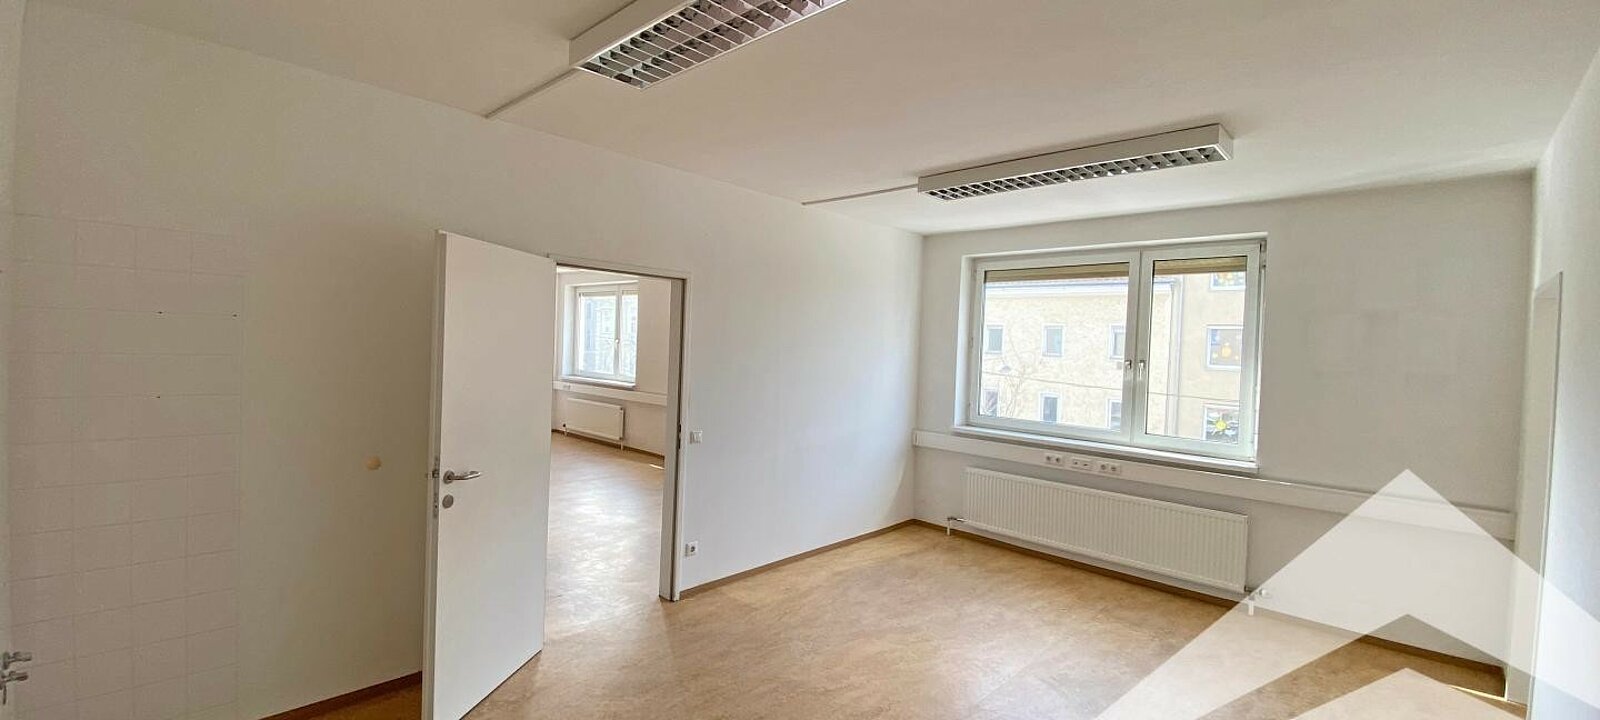 Büro 3 Wienerstrasse 20 m²